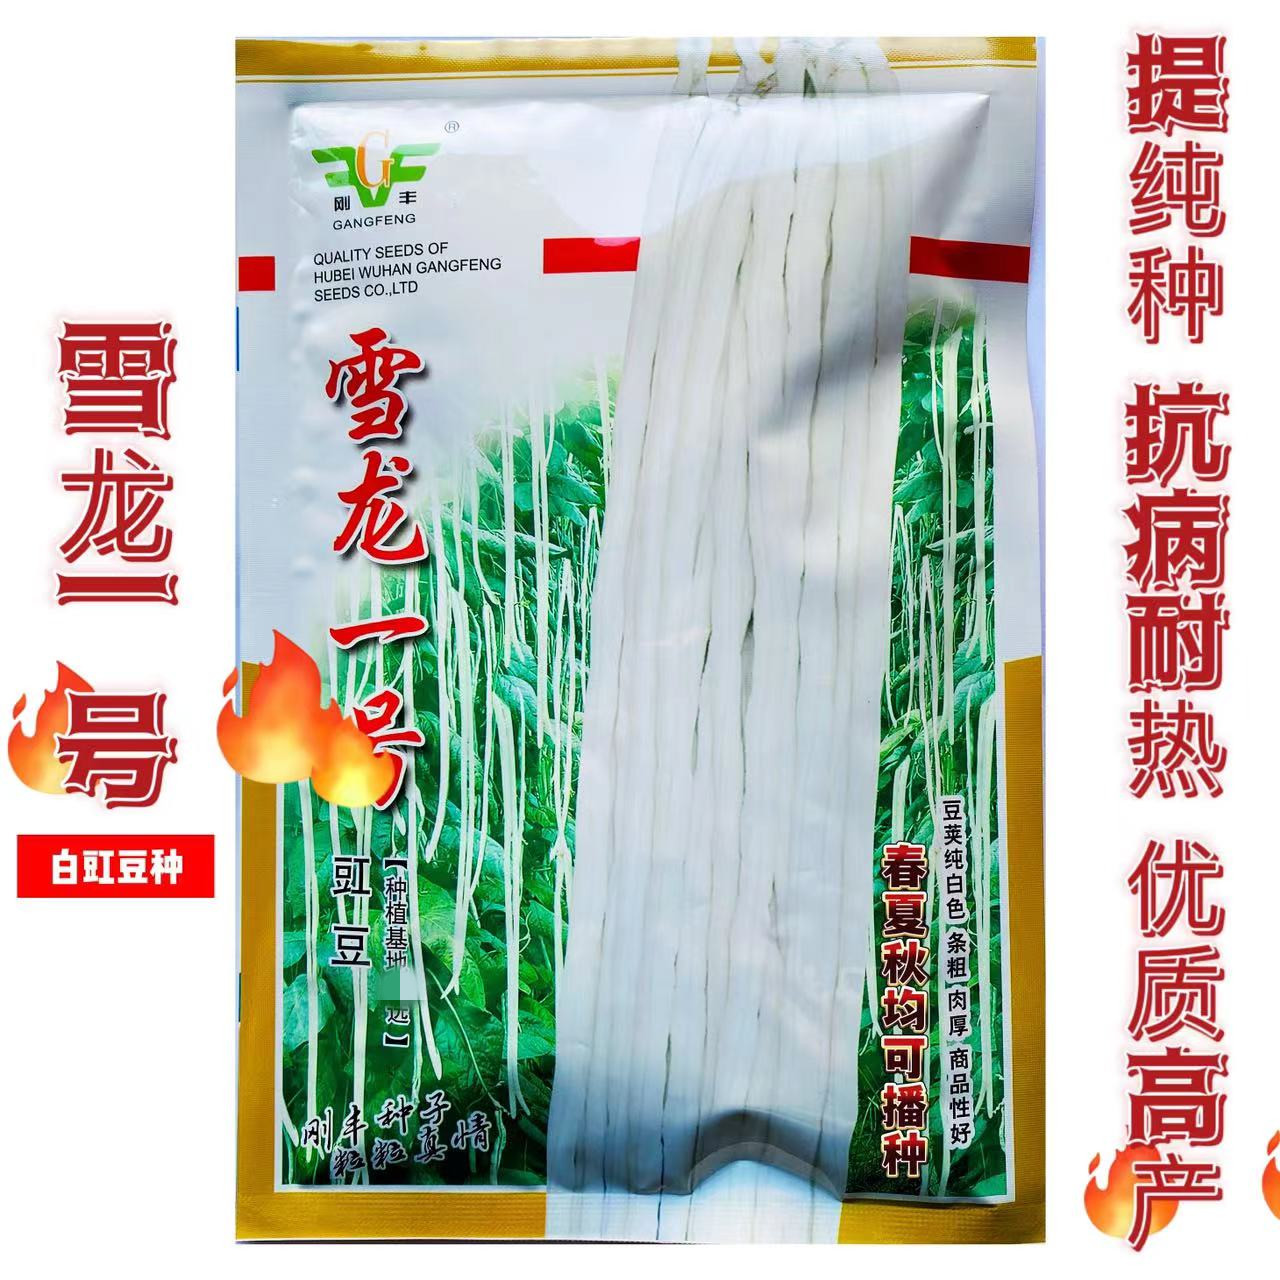 雪龙一号长条白豇豆种子优质早熟高产耐热抗病商品性佳农家春秋播